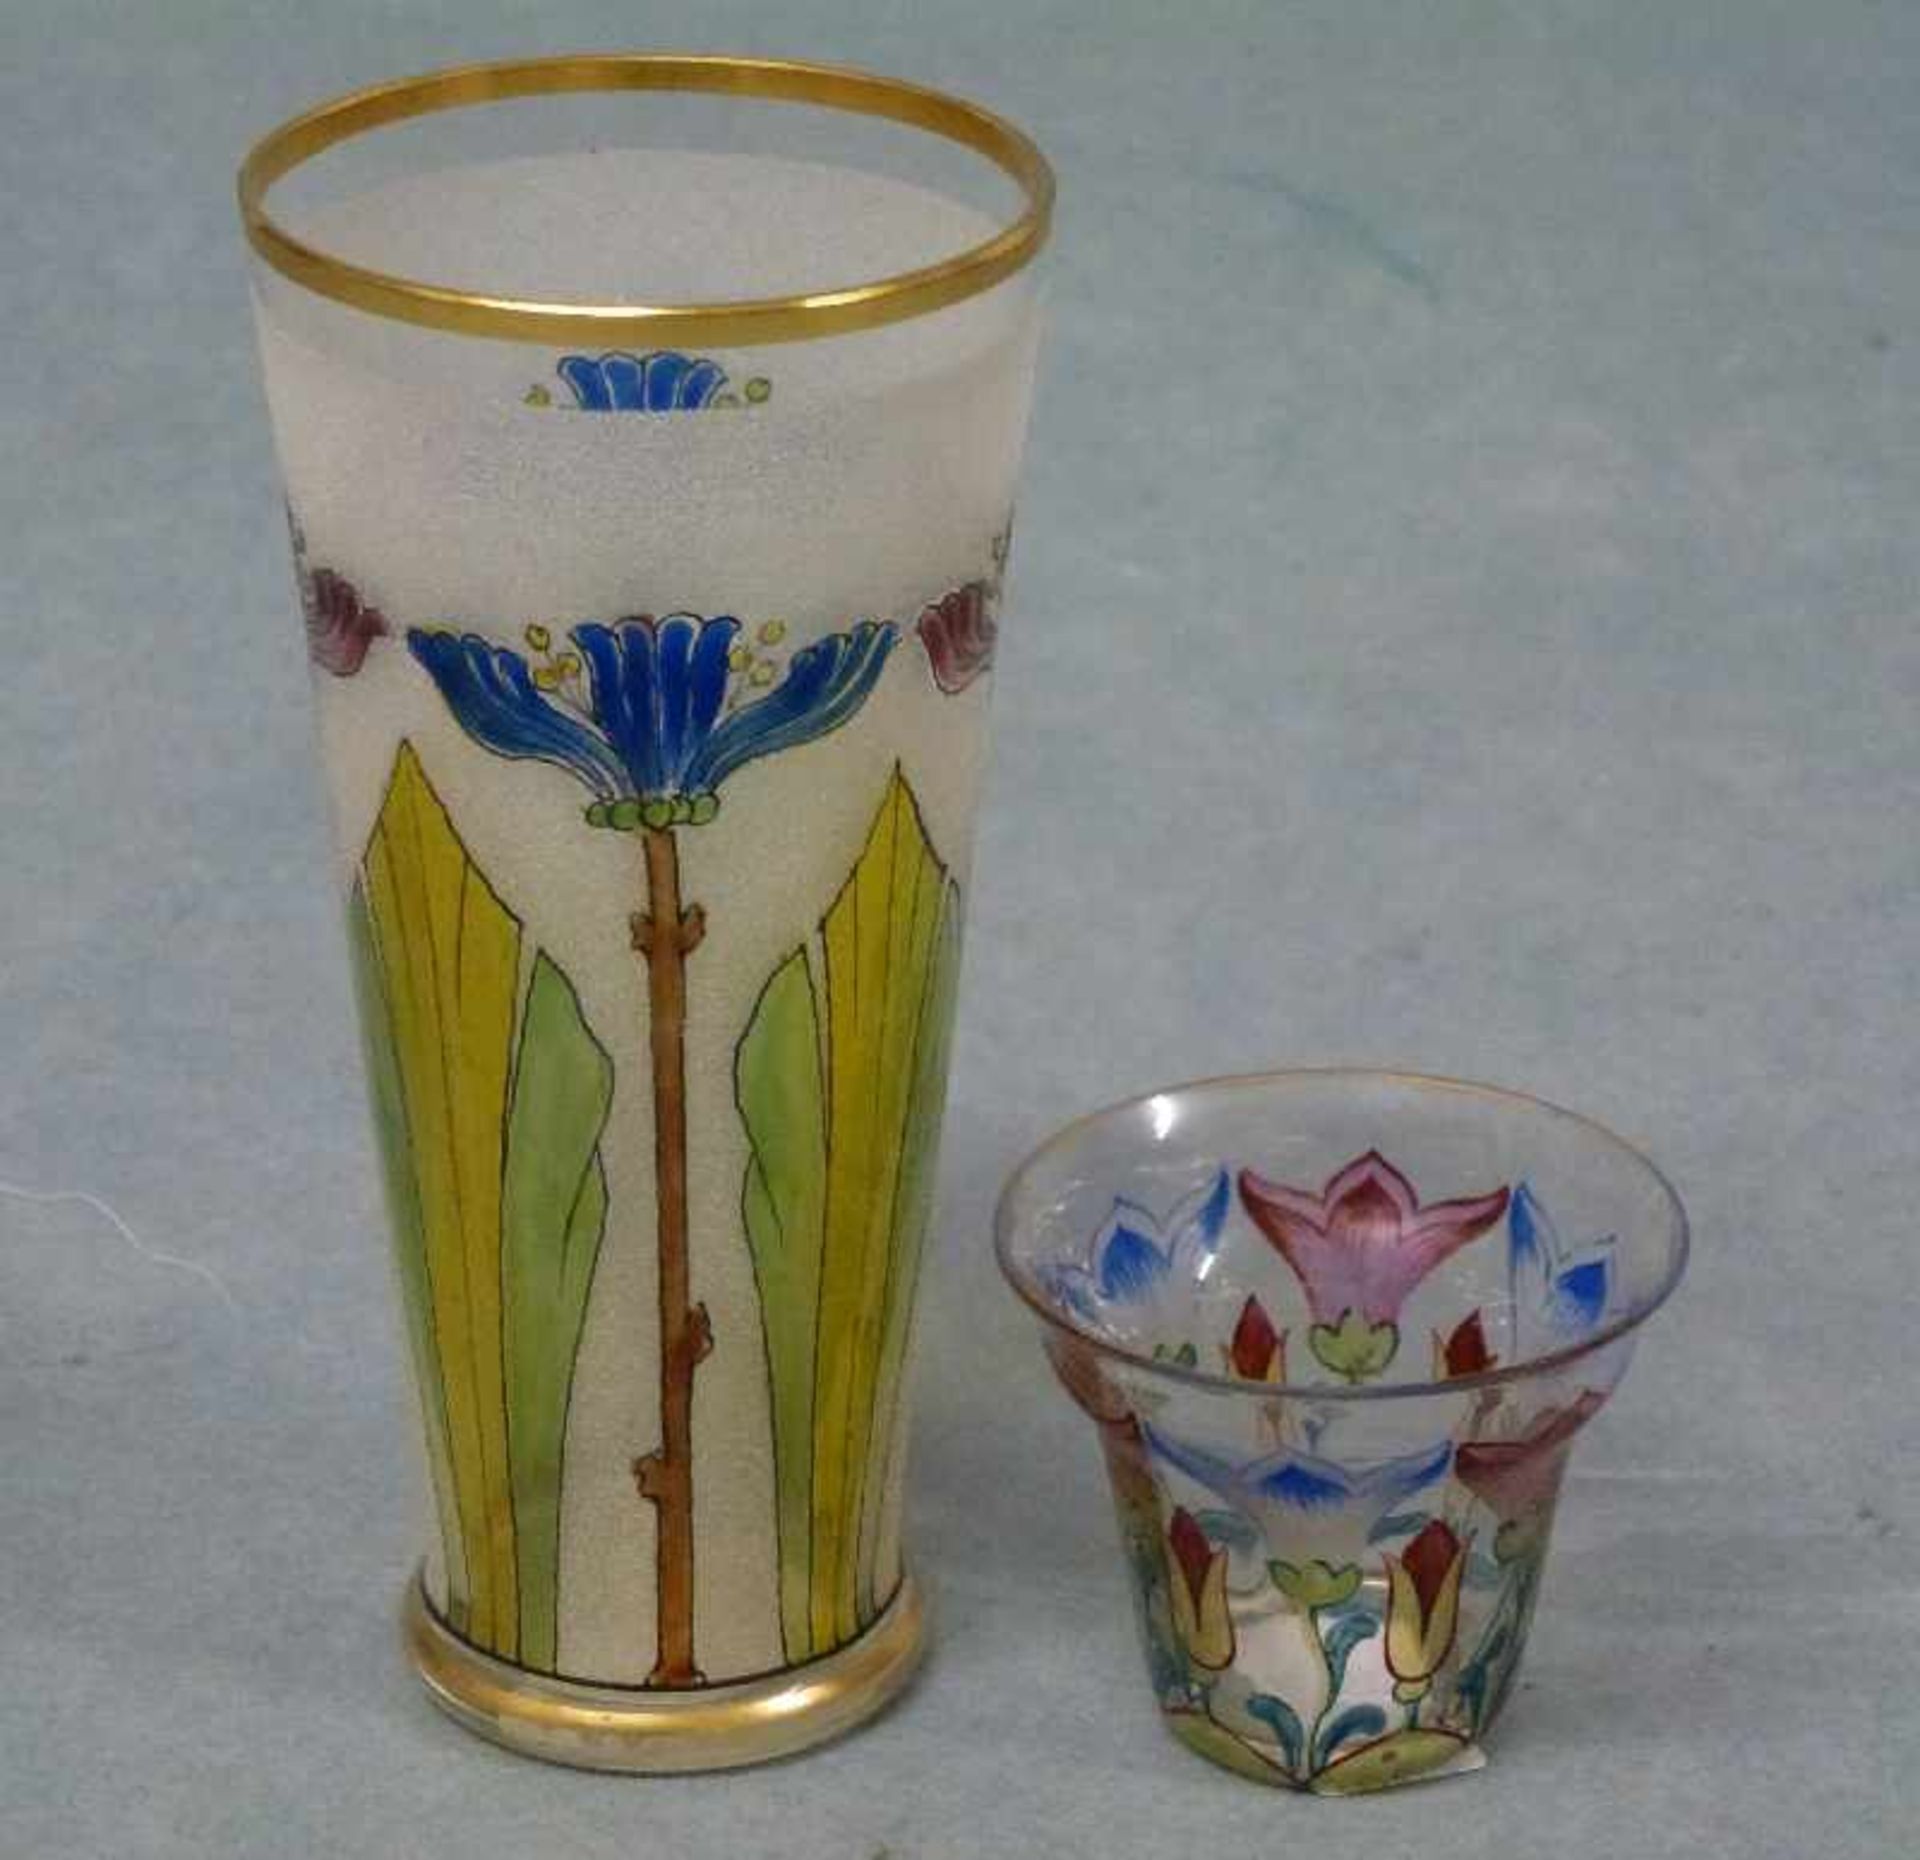 2 Jugendstil-Gläser, um 1900 konisch/Glockenform, farbige Blumen, 1x auf mattiertem Grund, H 11/4